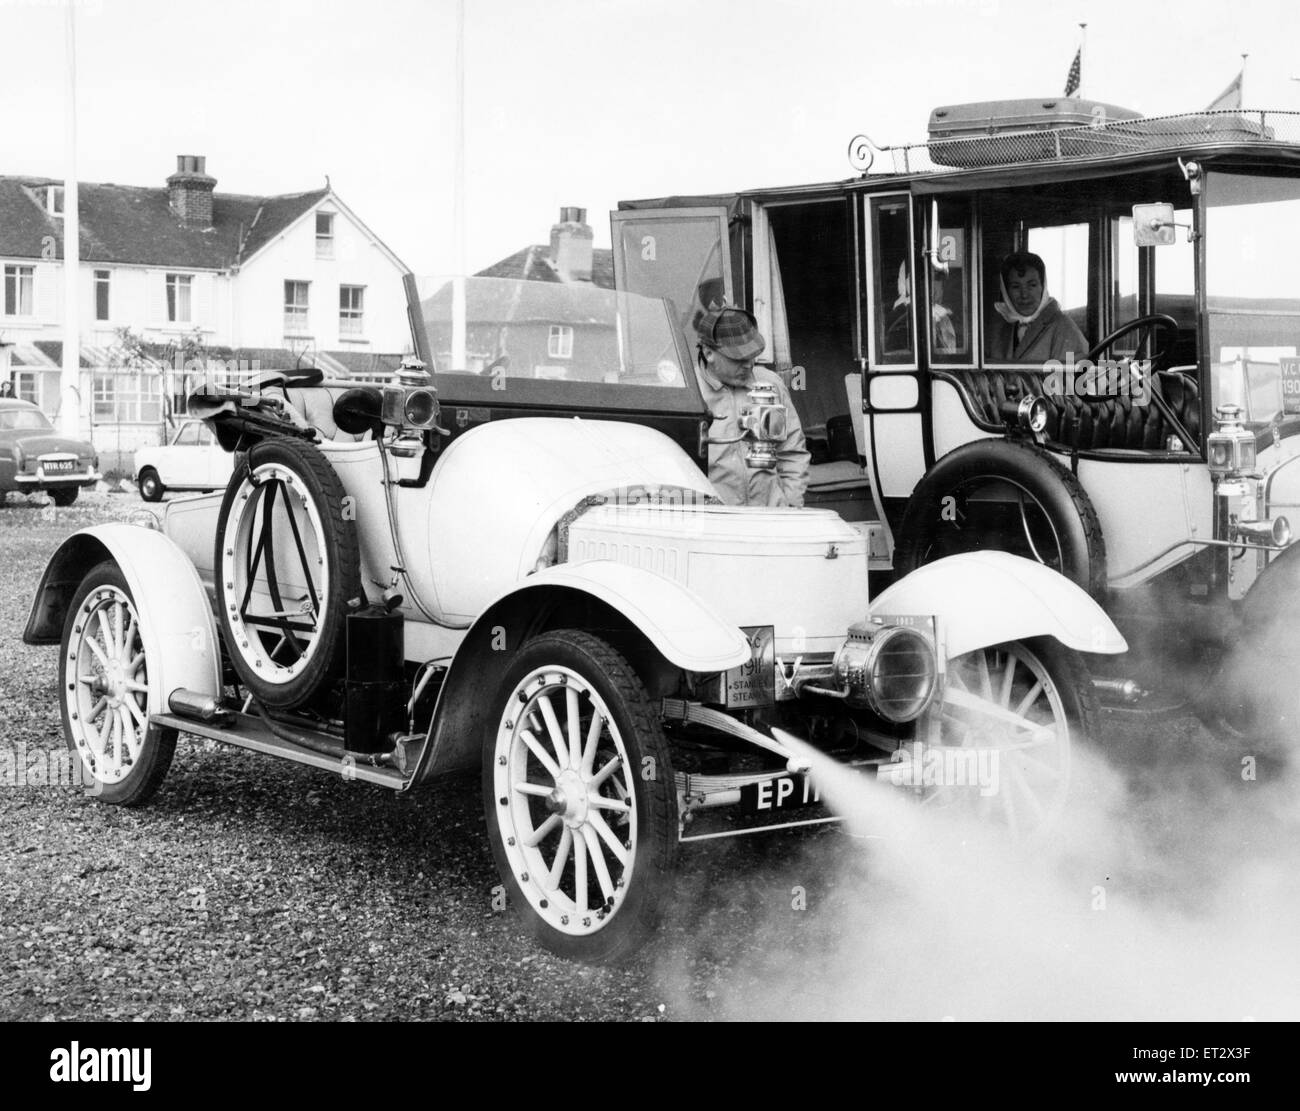 1911 Stanley auto a vapore, unico del suo anno nel paese, ha vinto un premio nel 4° Rally Internazionale di vintage e il veterano Car Club di Gran Bretagna, tenutosi lo scorso fine settimana tra Brighton e Bognor Regis. Nella foto con il driver proprietario Edgar Kendrew di Guisborough Road, Nunthorpe, 16 maggio 1963. Foto Stock